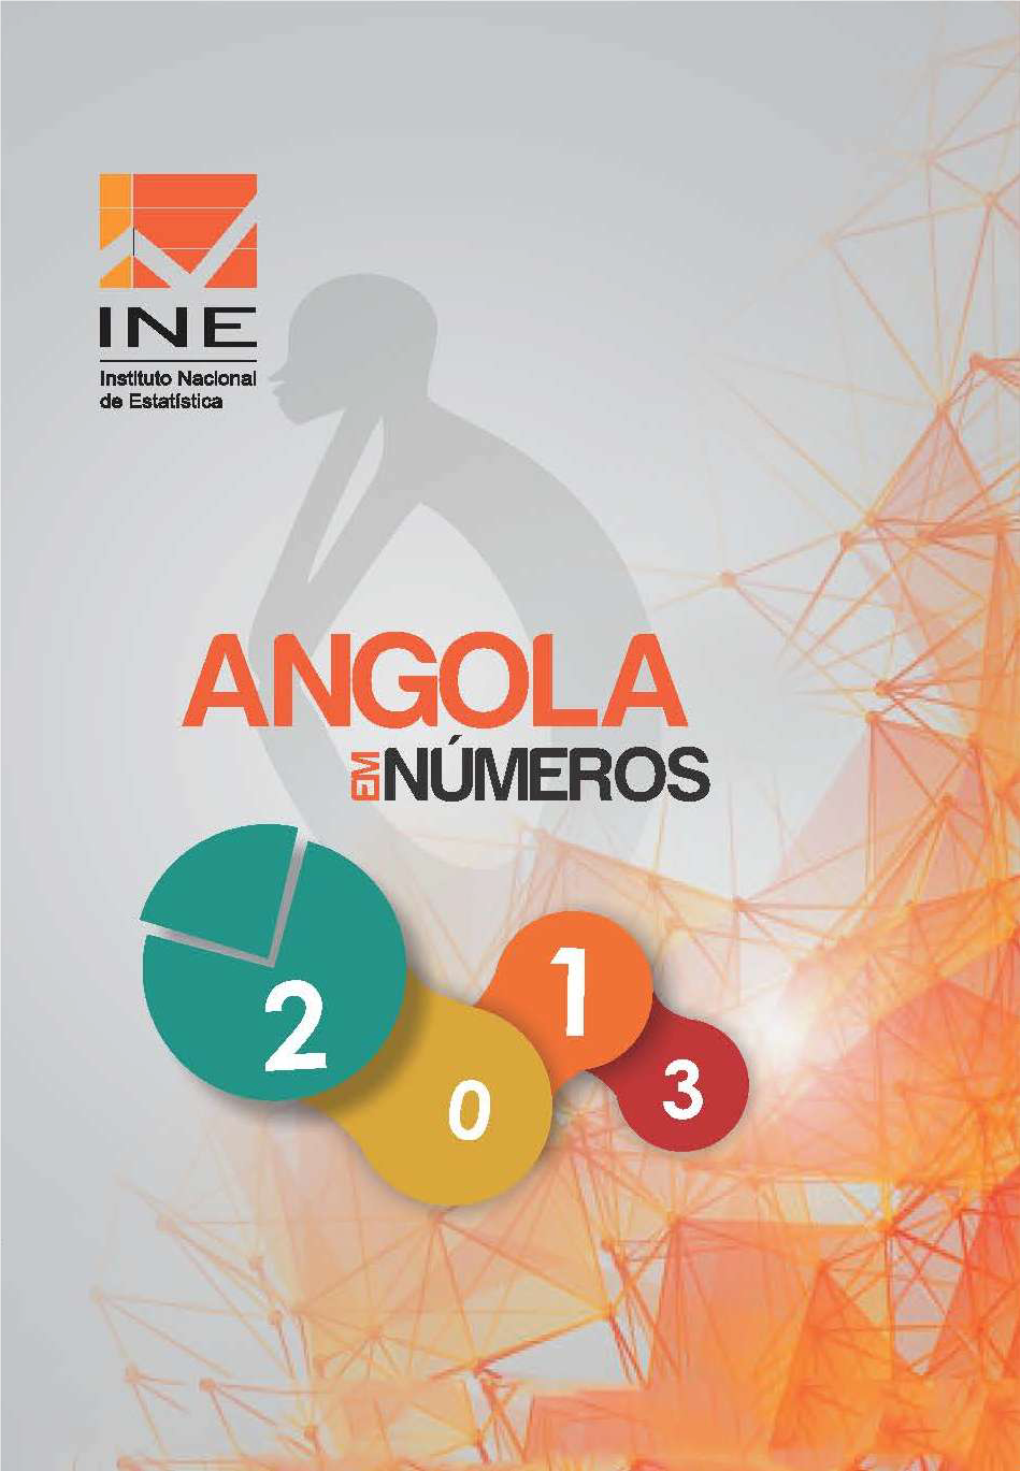 2013 Ine Angola Em Numeros.Pdf